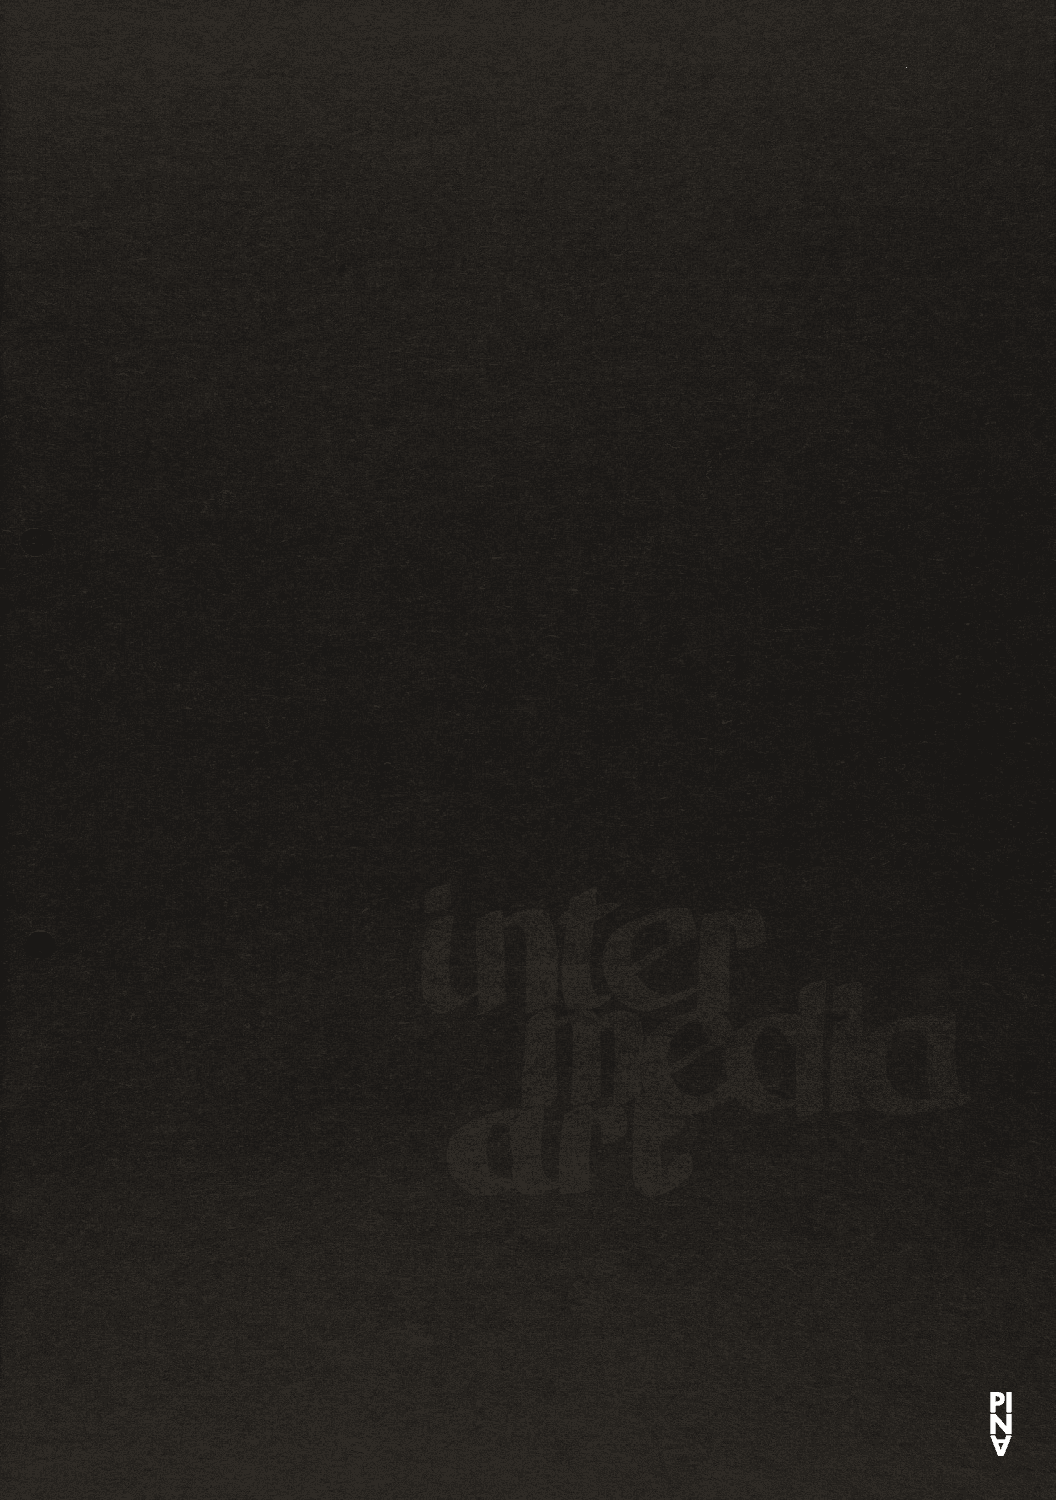 Programmheft zu „Nachnull“ und „Im Wind der Zeit“ von Pina Bausch mit Folkwangballett und „Estremadura“, „Die Pflanze“ und „Sketch“ von Sieglinde Wiedemann mit Intermedia Art in München, 8. Januar 1970